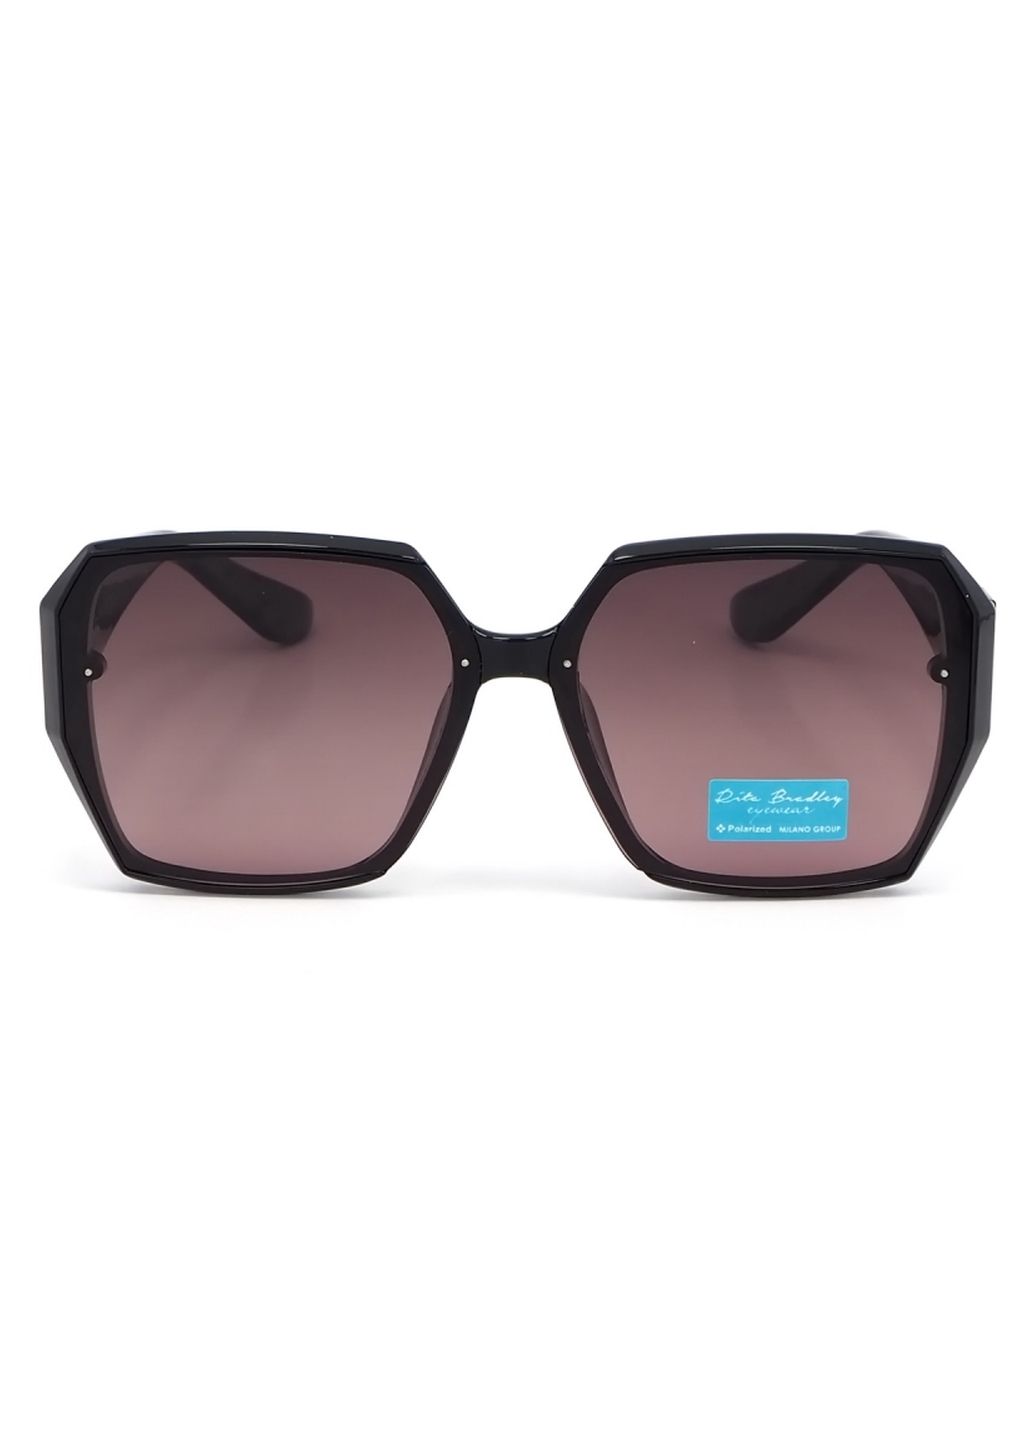 Купить Женские солнцезащитные очки Rita Bradley с поляризацией RB722 112033 в интернет-магазине